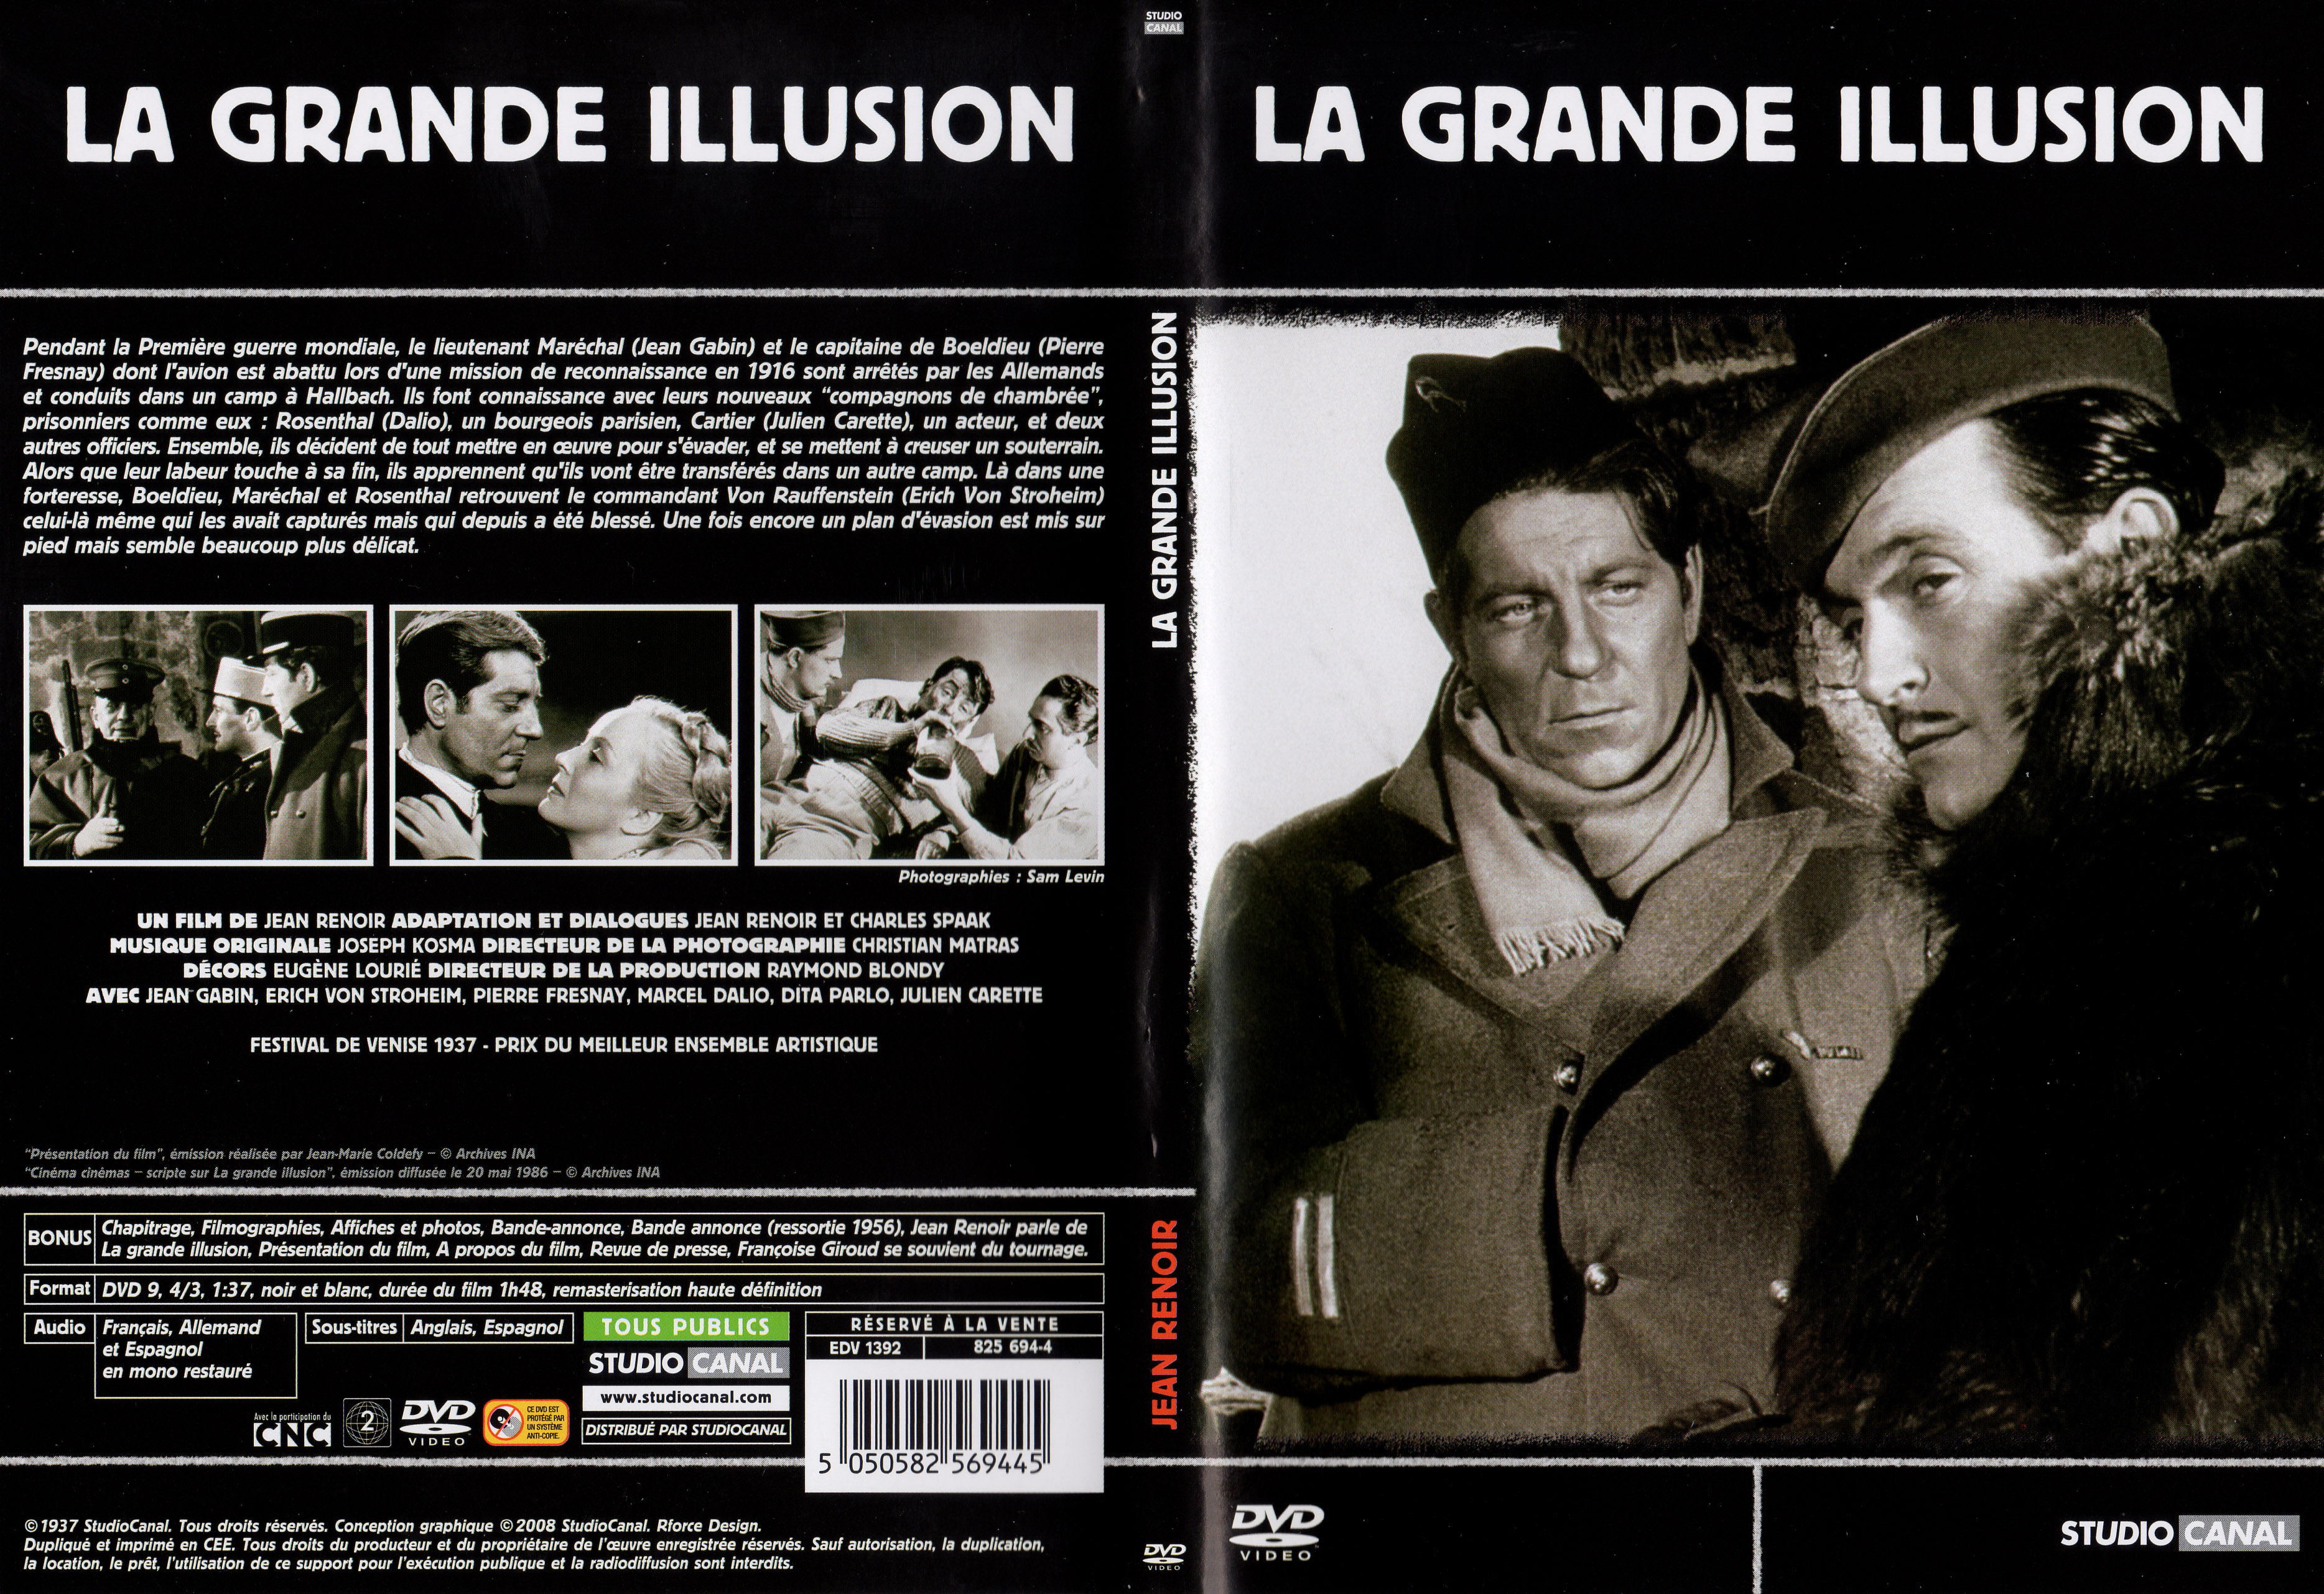 Jaquette DVD La grande illusion v4